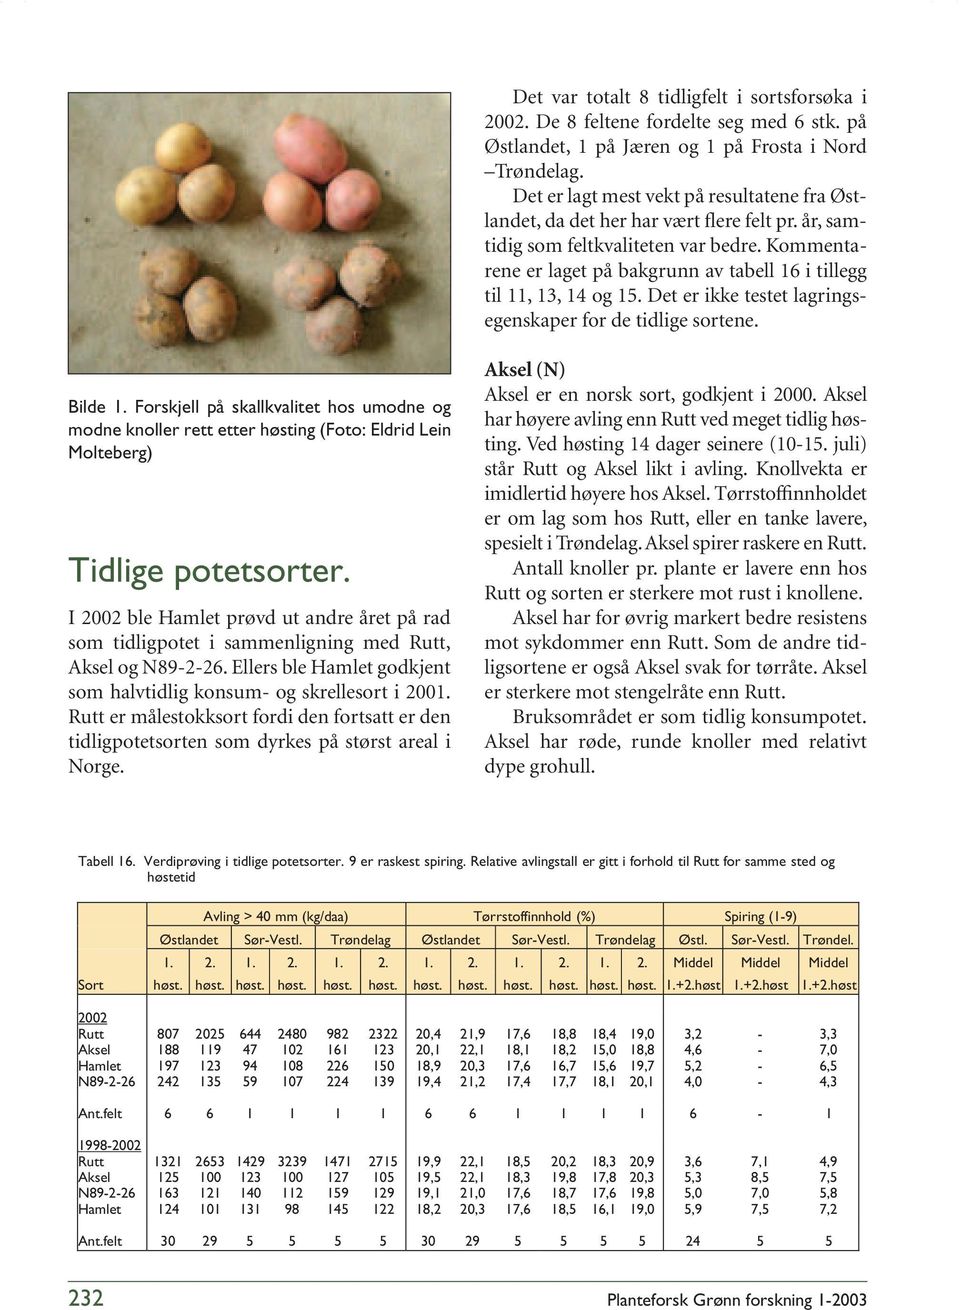 Det er ikke testet lagringsegenskaper for de tidlige sortene. Bilde. Forskjell på skallkvalitet hos umodne og modne knoller rett etter høsting (Foto: Eldrid Lein Molteberg) Tidlige potetsorter.